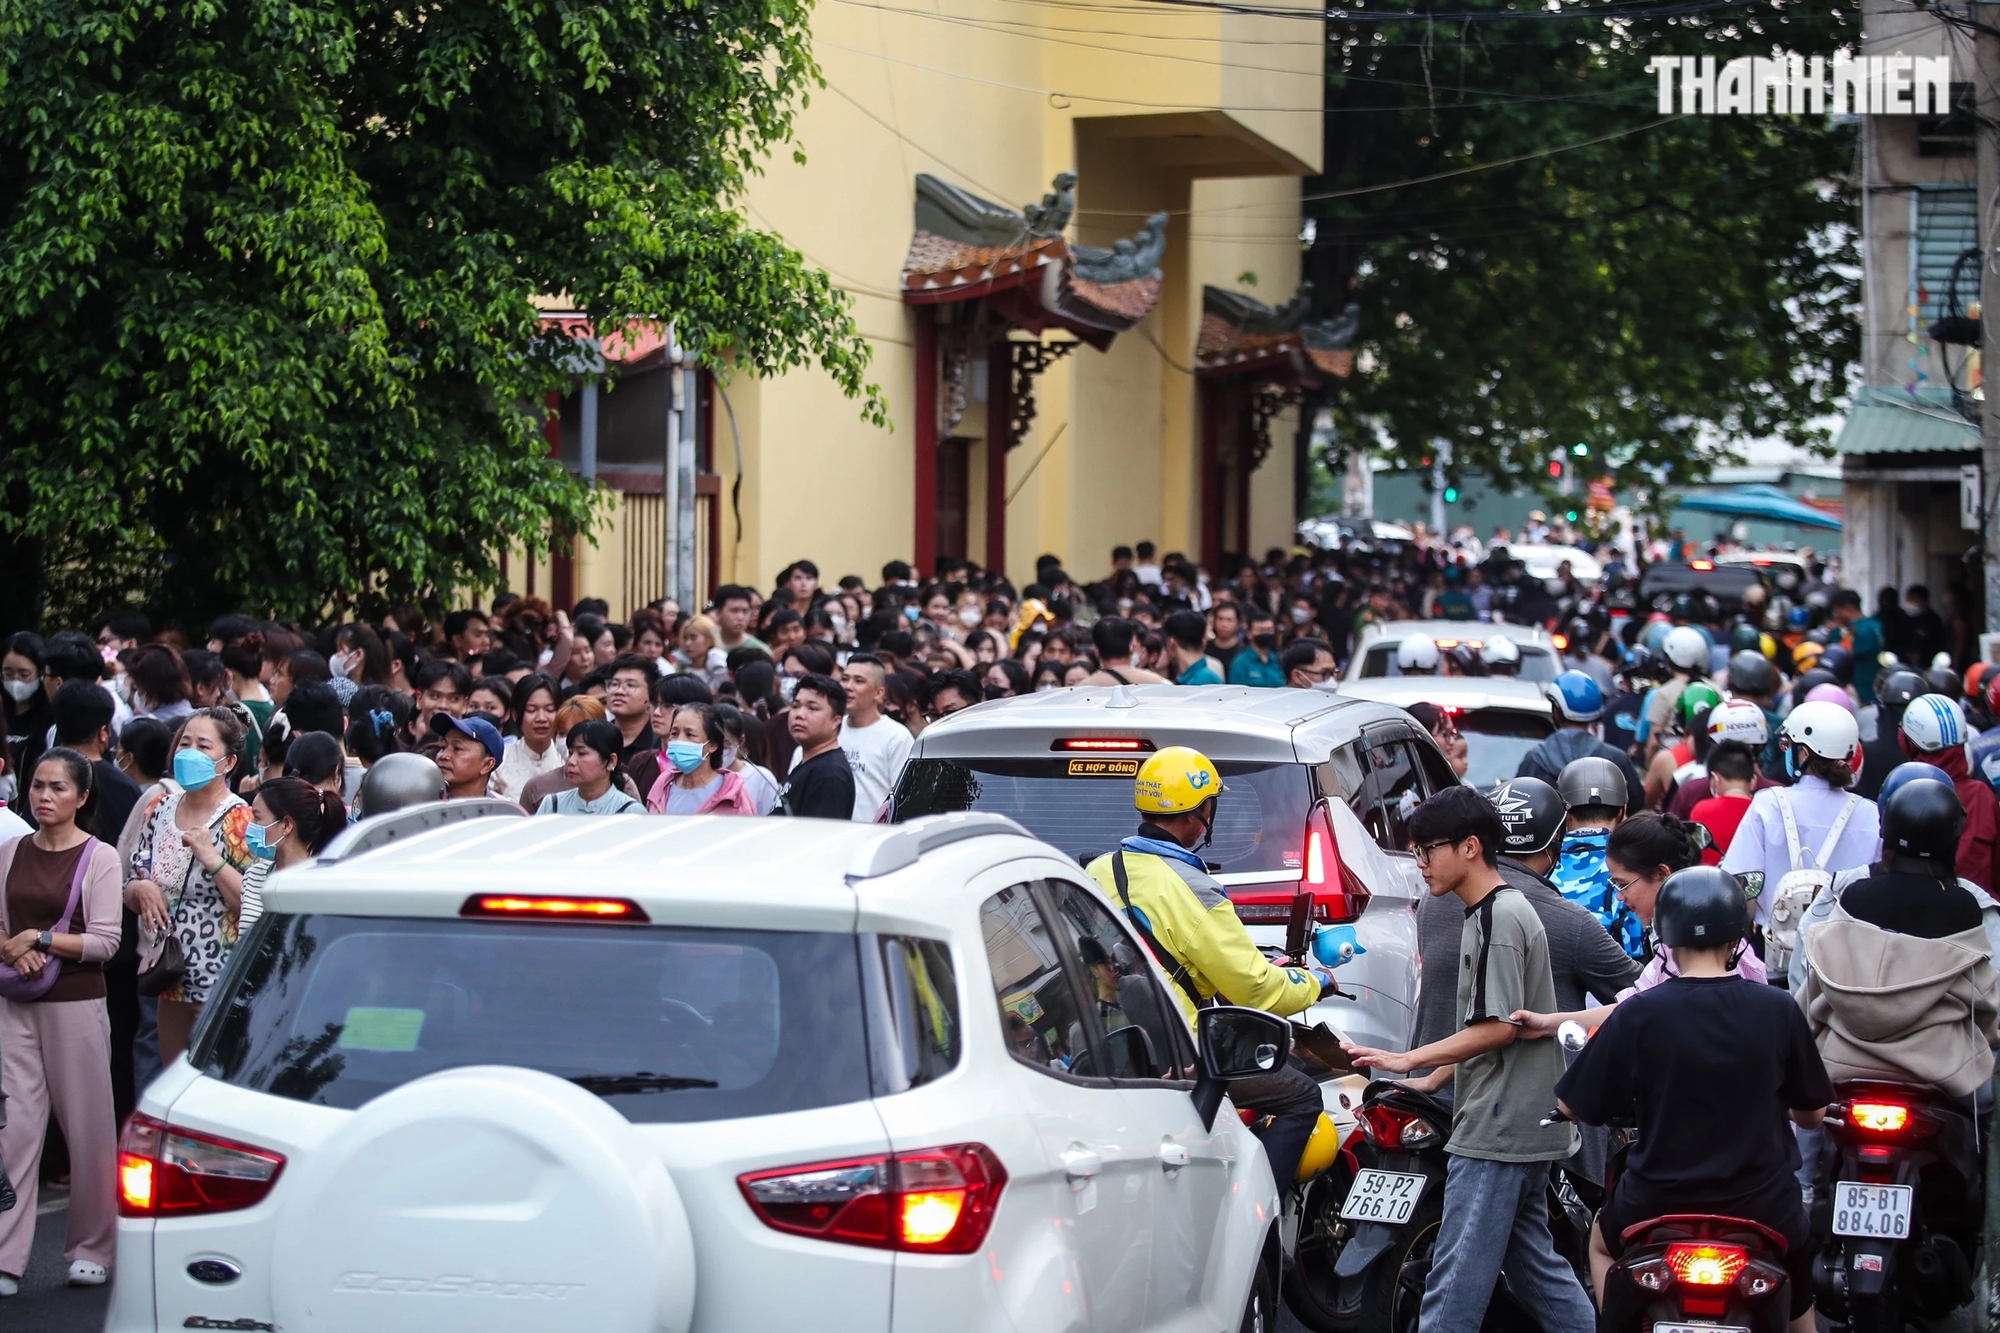 Ngay từ 17 giờ chiều, rất đông người đổ về khu vực đường dẫn vào chùa Pháp Hoa gây nên cảnh ùn tắc cục bộ